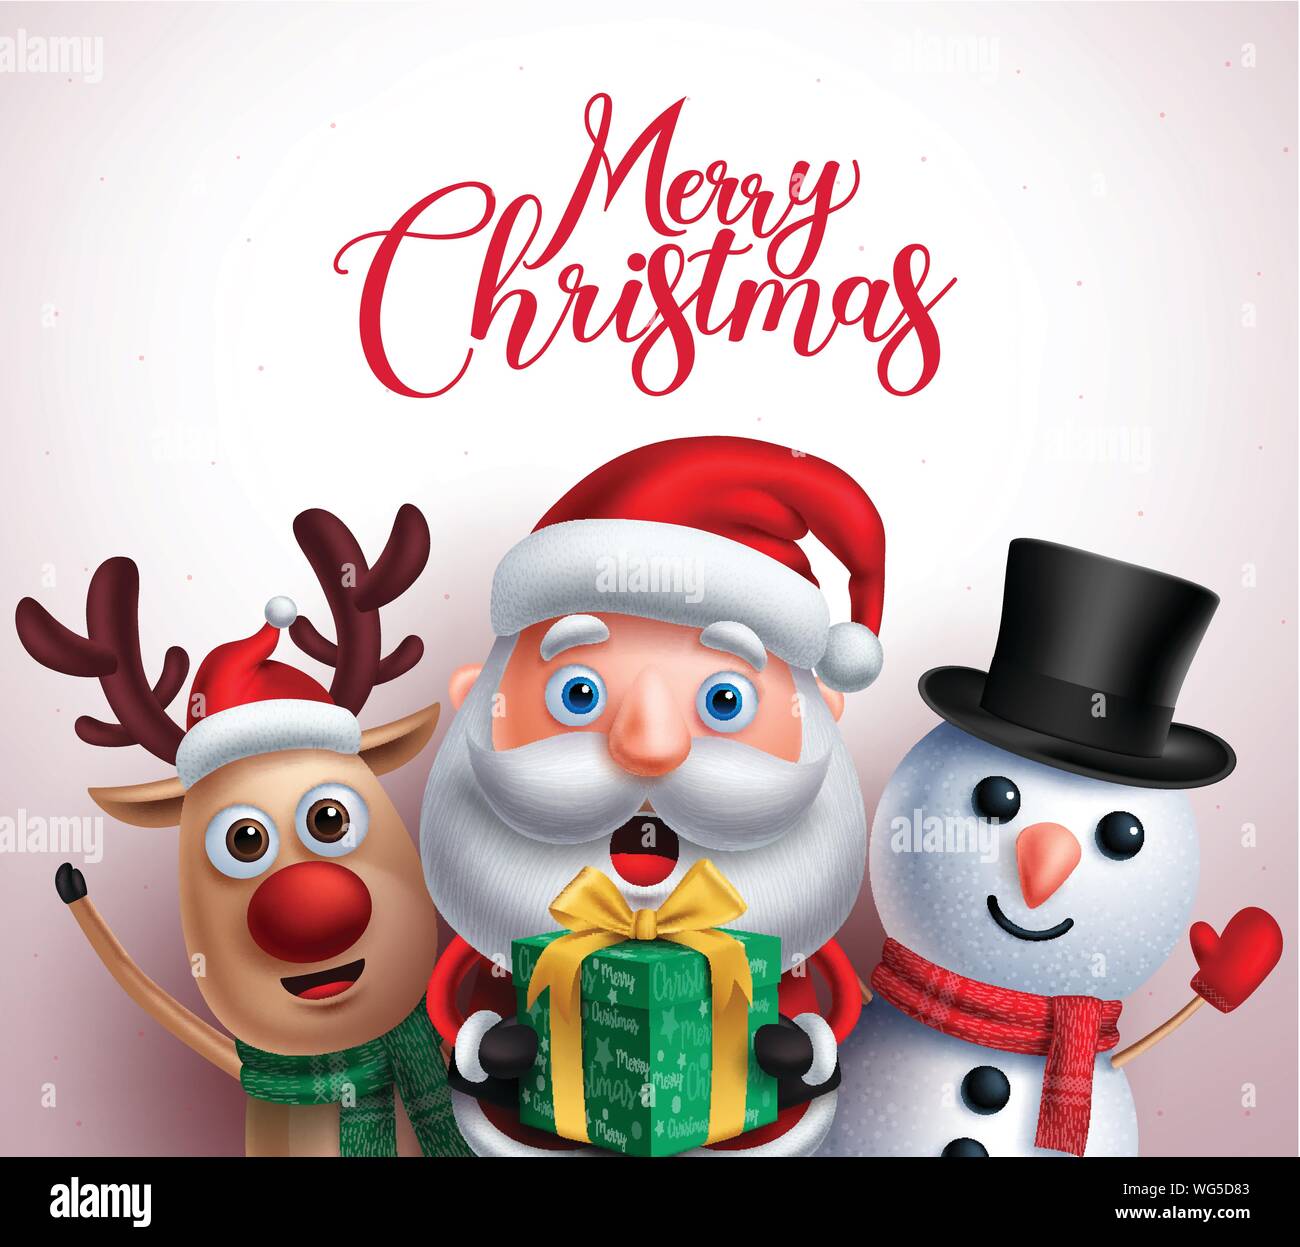 Weihnachten figuren wie Weihnachtsmann, Rentier und Schneemann mit Geschenk  mit frohe Weihnachten Gruß in weißen Hintergrund. Vector Illustration  Stock-Vektorgrafik - Alamy